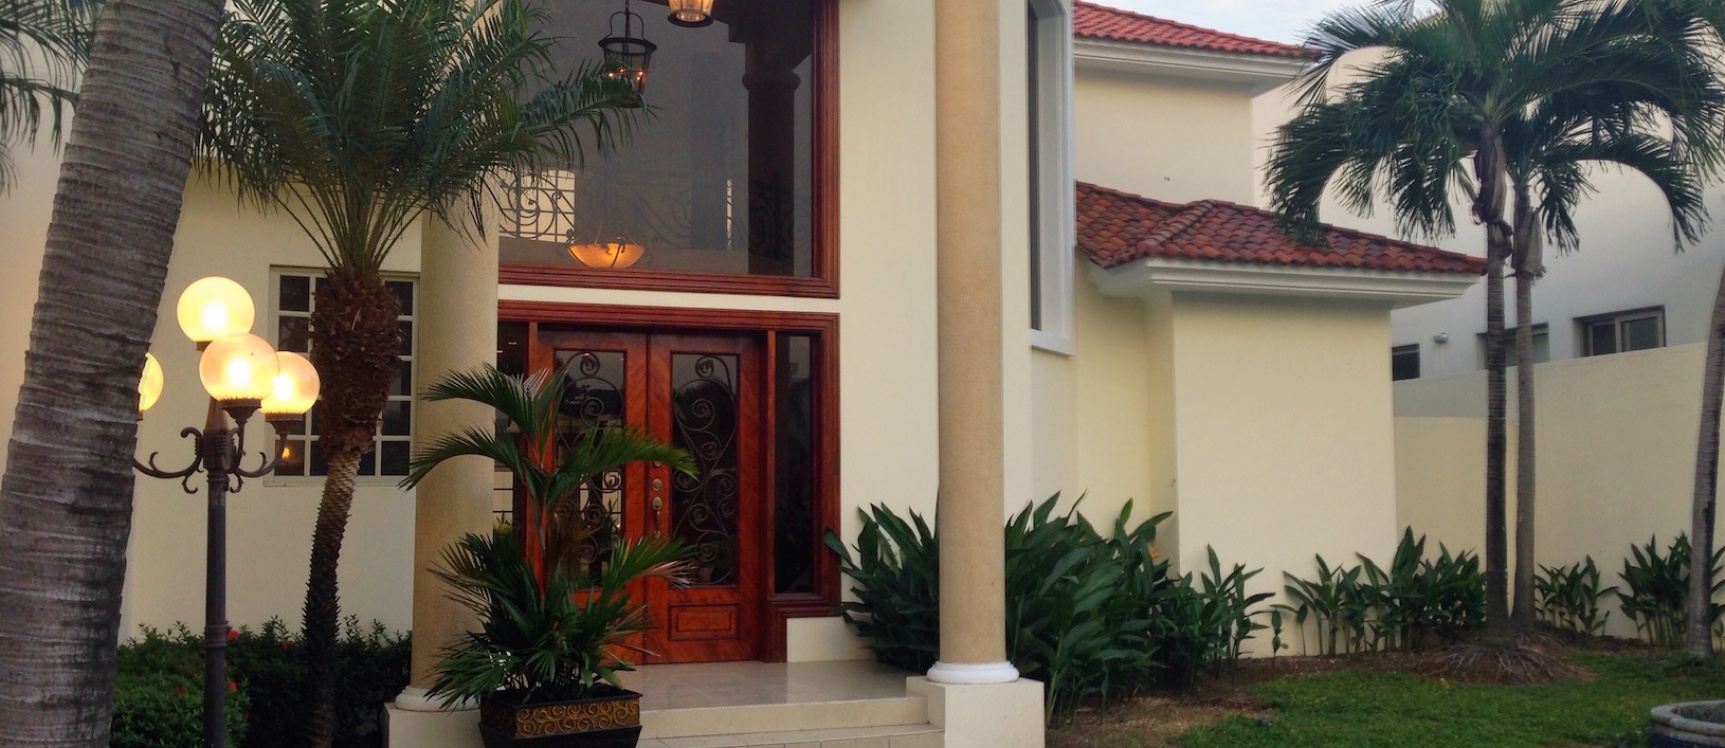 GeoBienes - Casa de venta en Samborondón Urbanización Lago Sol de oportunidad - Plusvalia Guayaquil Casas de venta y alquiler Inmobiliaria Ecuador